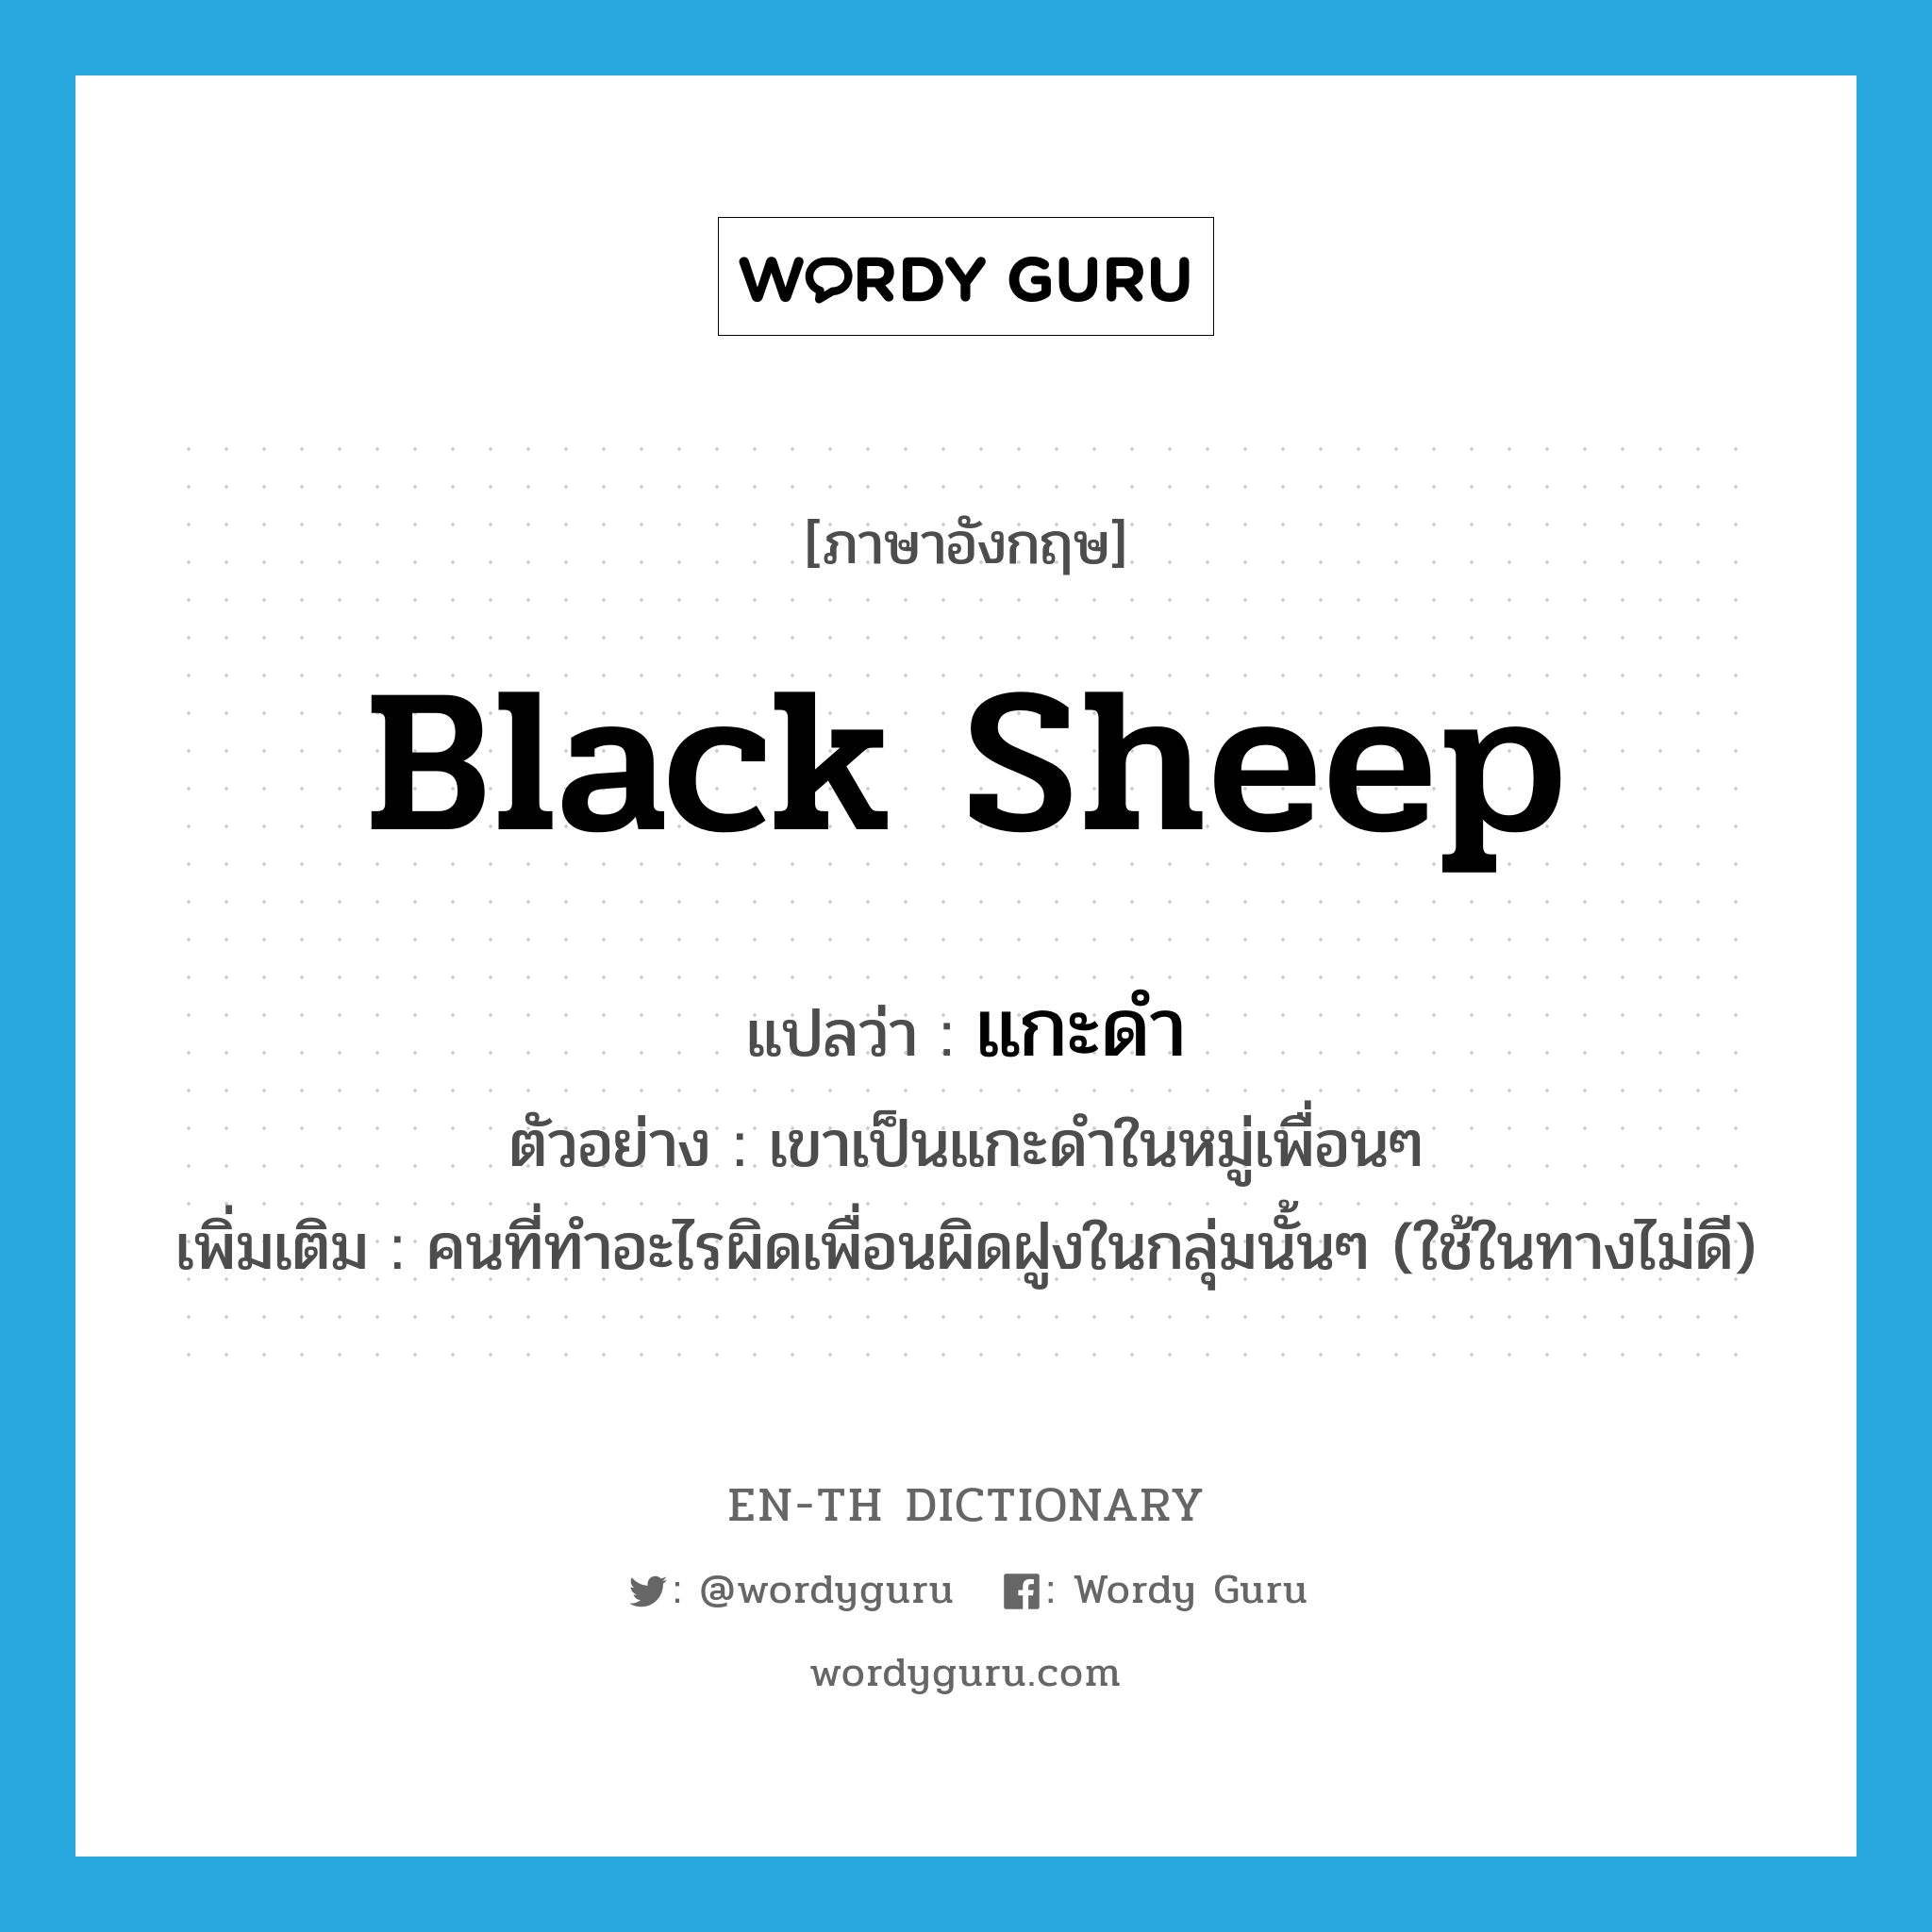 black sheep แปลว่า?, คำศัพท์ภาษาอังกฤษ black sheep แปลว่า แกะดำ ประเภท N ตัวอย่าง เขาเป็นแกะดำในหมู่เพื่อนๆ เพิ่มเติม คนที่ทำอะไรผิดเพื่อนผิดฝูงในกลุ่มนั้นๆ (ใช้ในทางไม่ดี) หมวด N